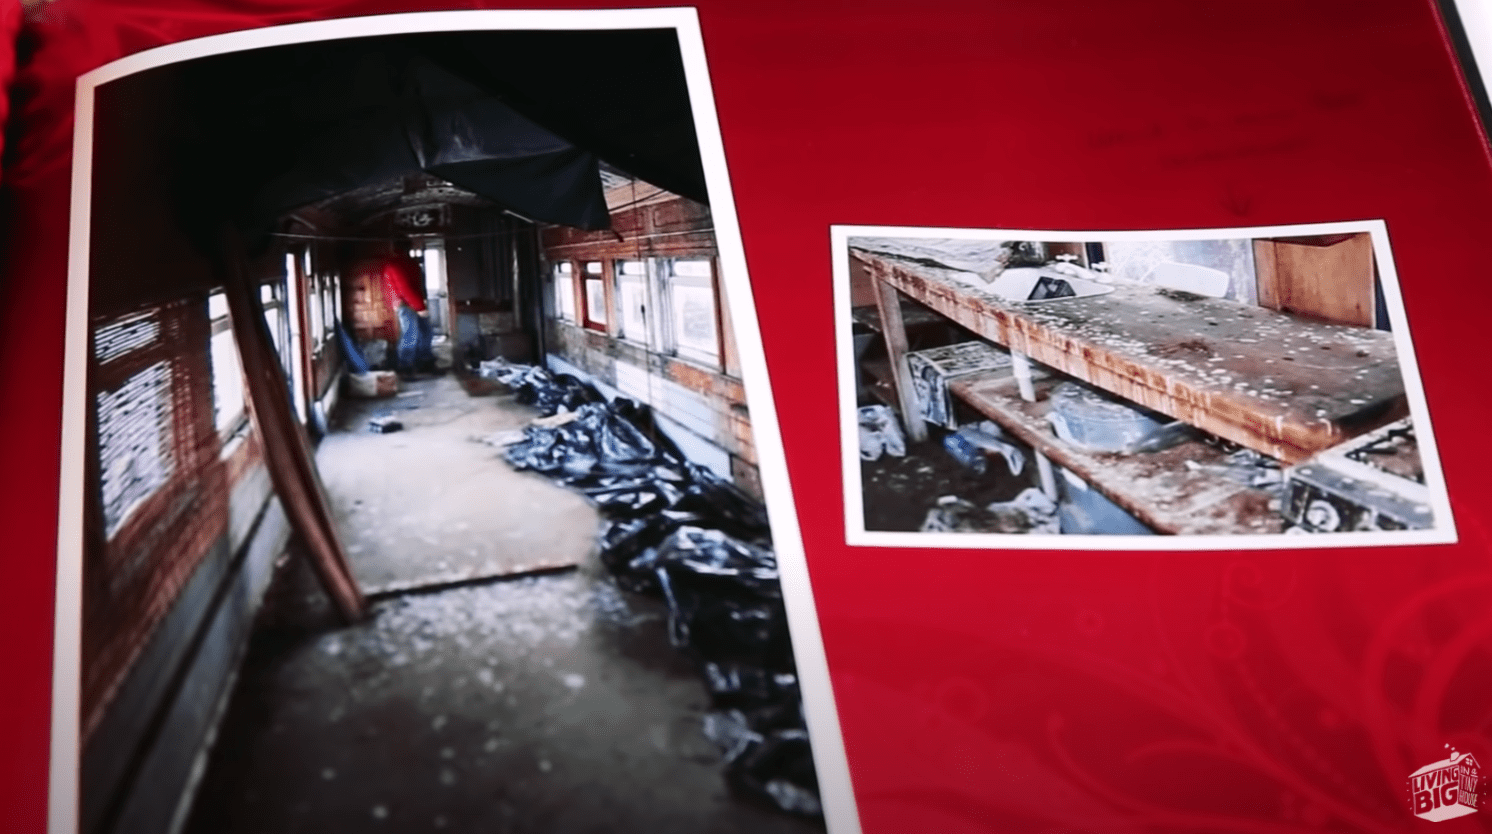 Fotos in einem Album zeigen, wie ein renoviertes Haus aus Eisenbahnwaggons vor der Renovierung aussah | Quelle: Youtube/Living Big In A Tiny House